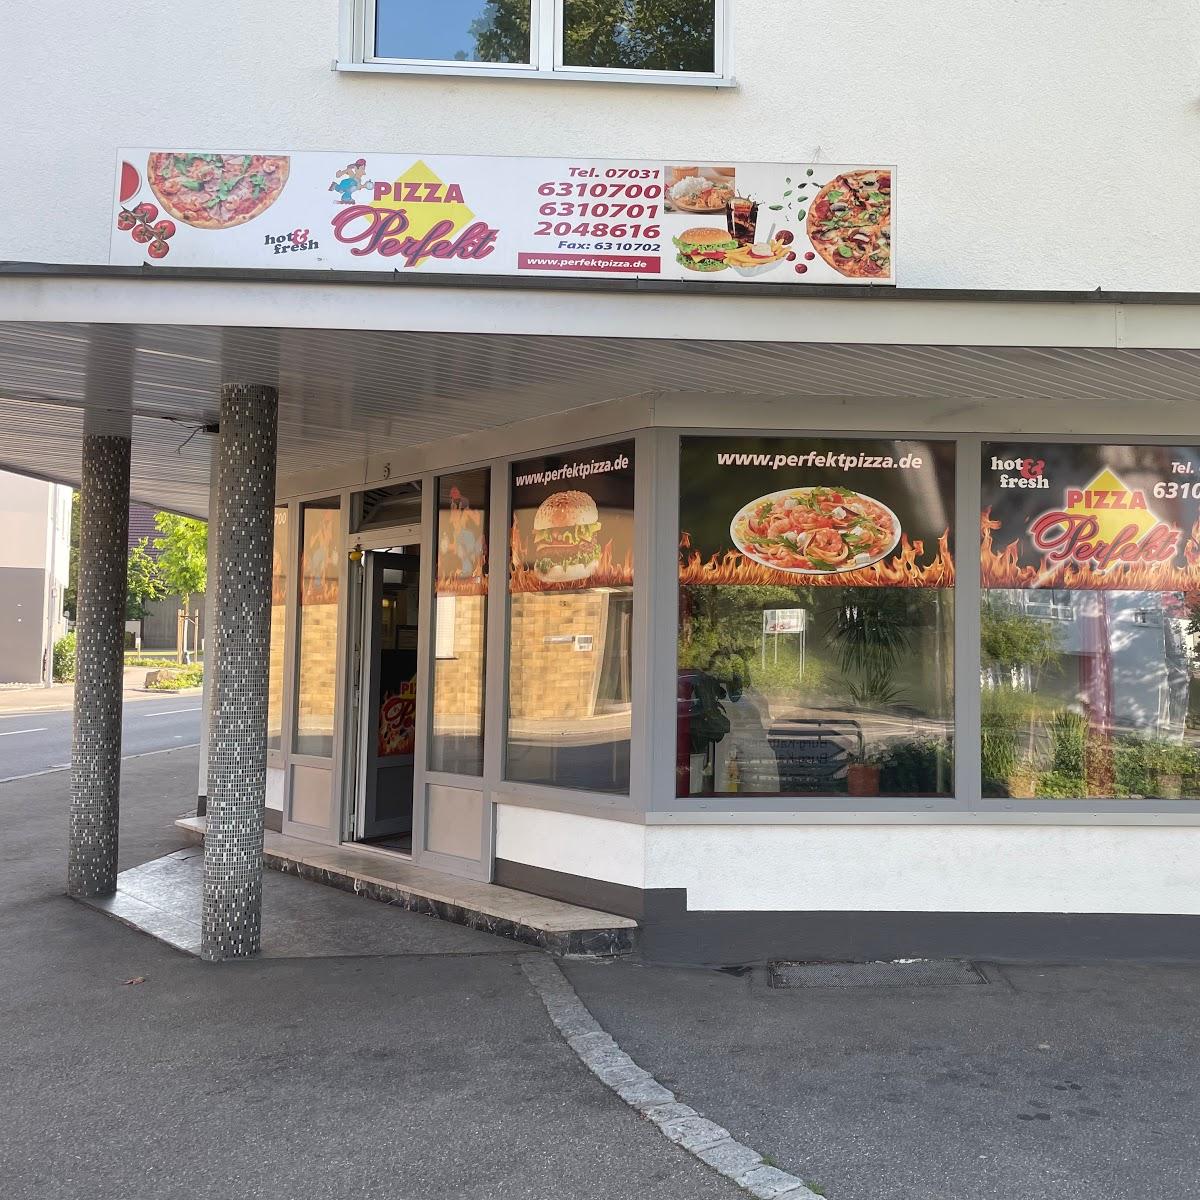 Restaurant "Pizza Perfekt" in Holzgerlingen